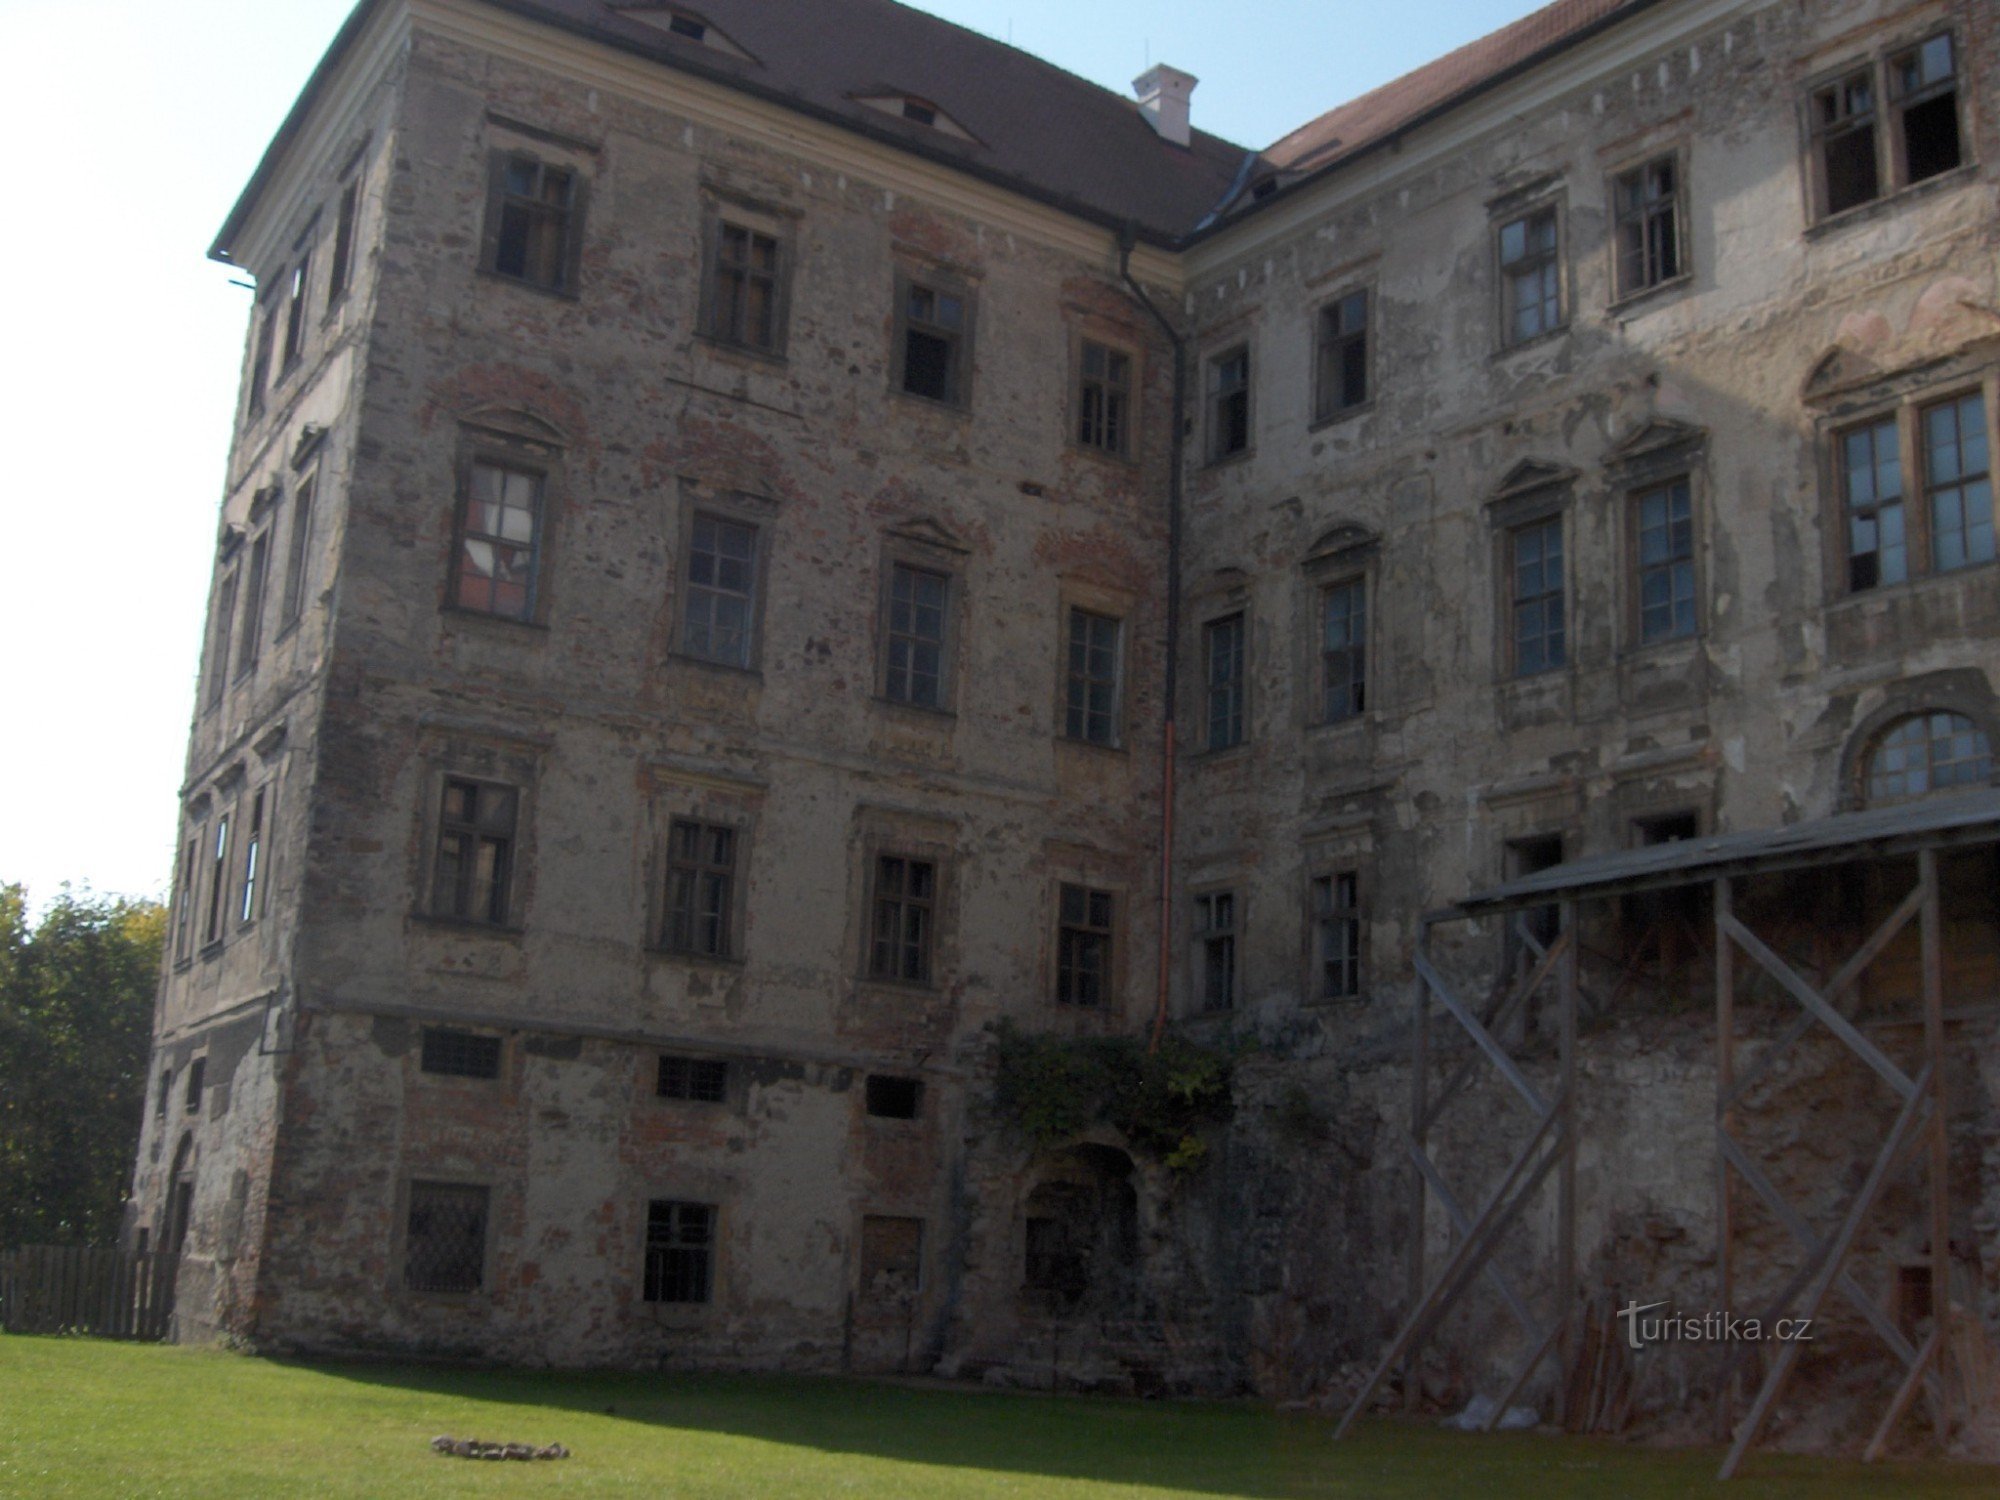 c'est aussi le château de Jezeří